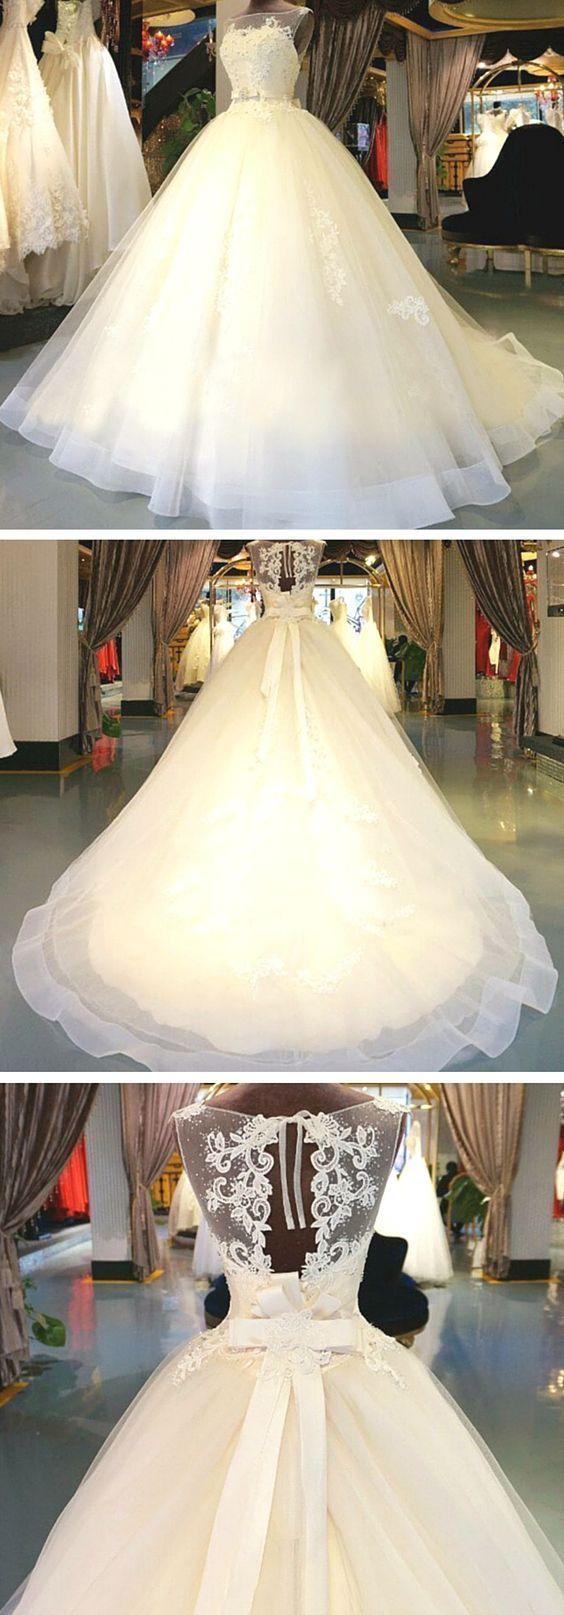 زفاف - Princess Ball Gown White Tulle Skirt Lace Bodice Wedding Gowns Wedding Dresses Unique Wedding Dress Bride Gowns